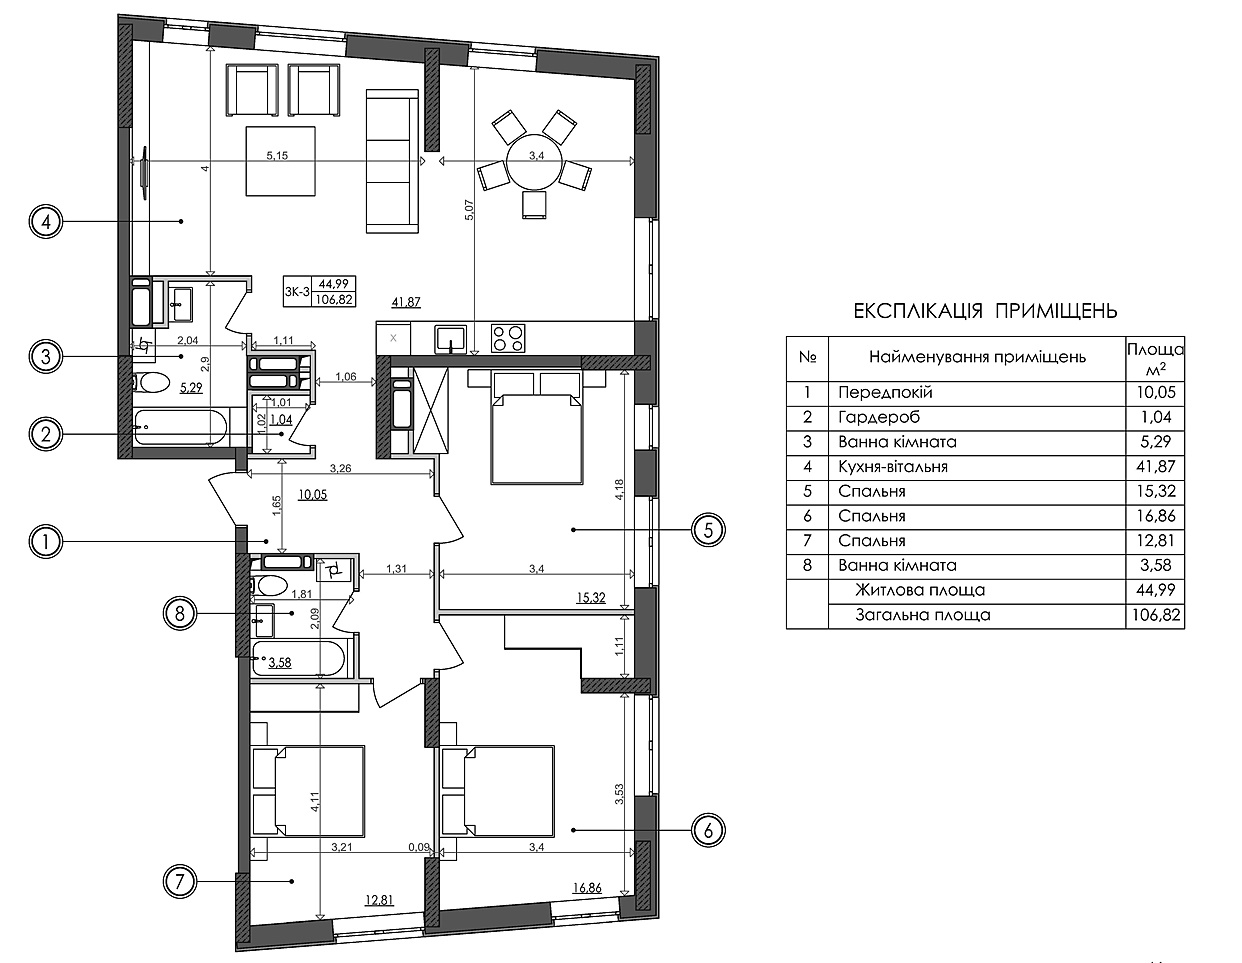 ЖК Svitlo Park пример планировки трехкомнатной квартиры